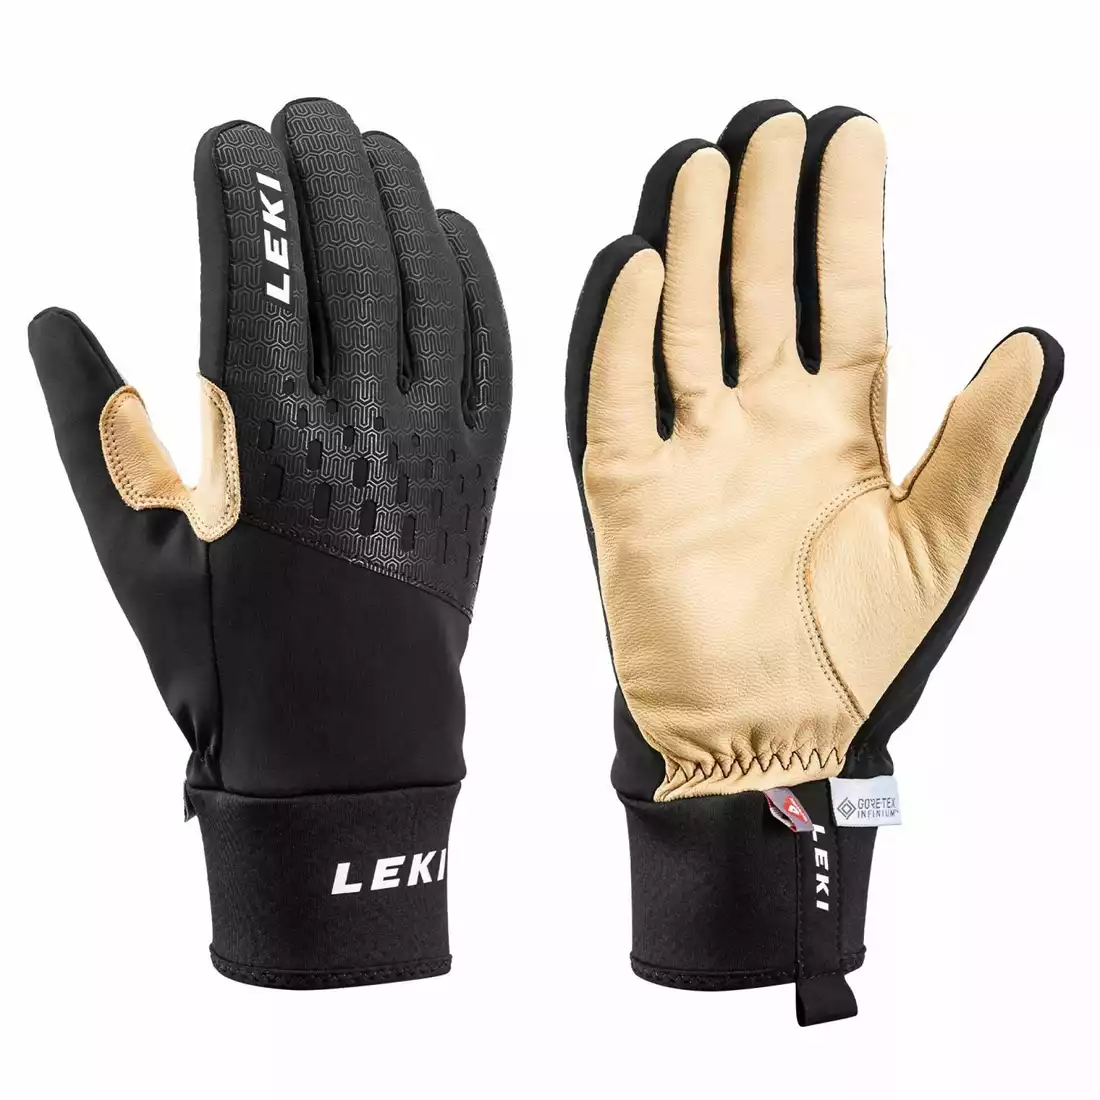 LEKI Nordic Thermo Premium mănuși de iarnă, negru și bej